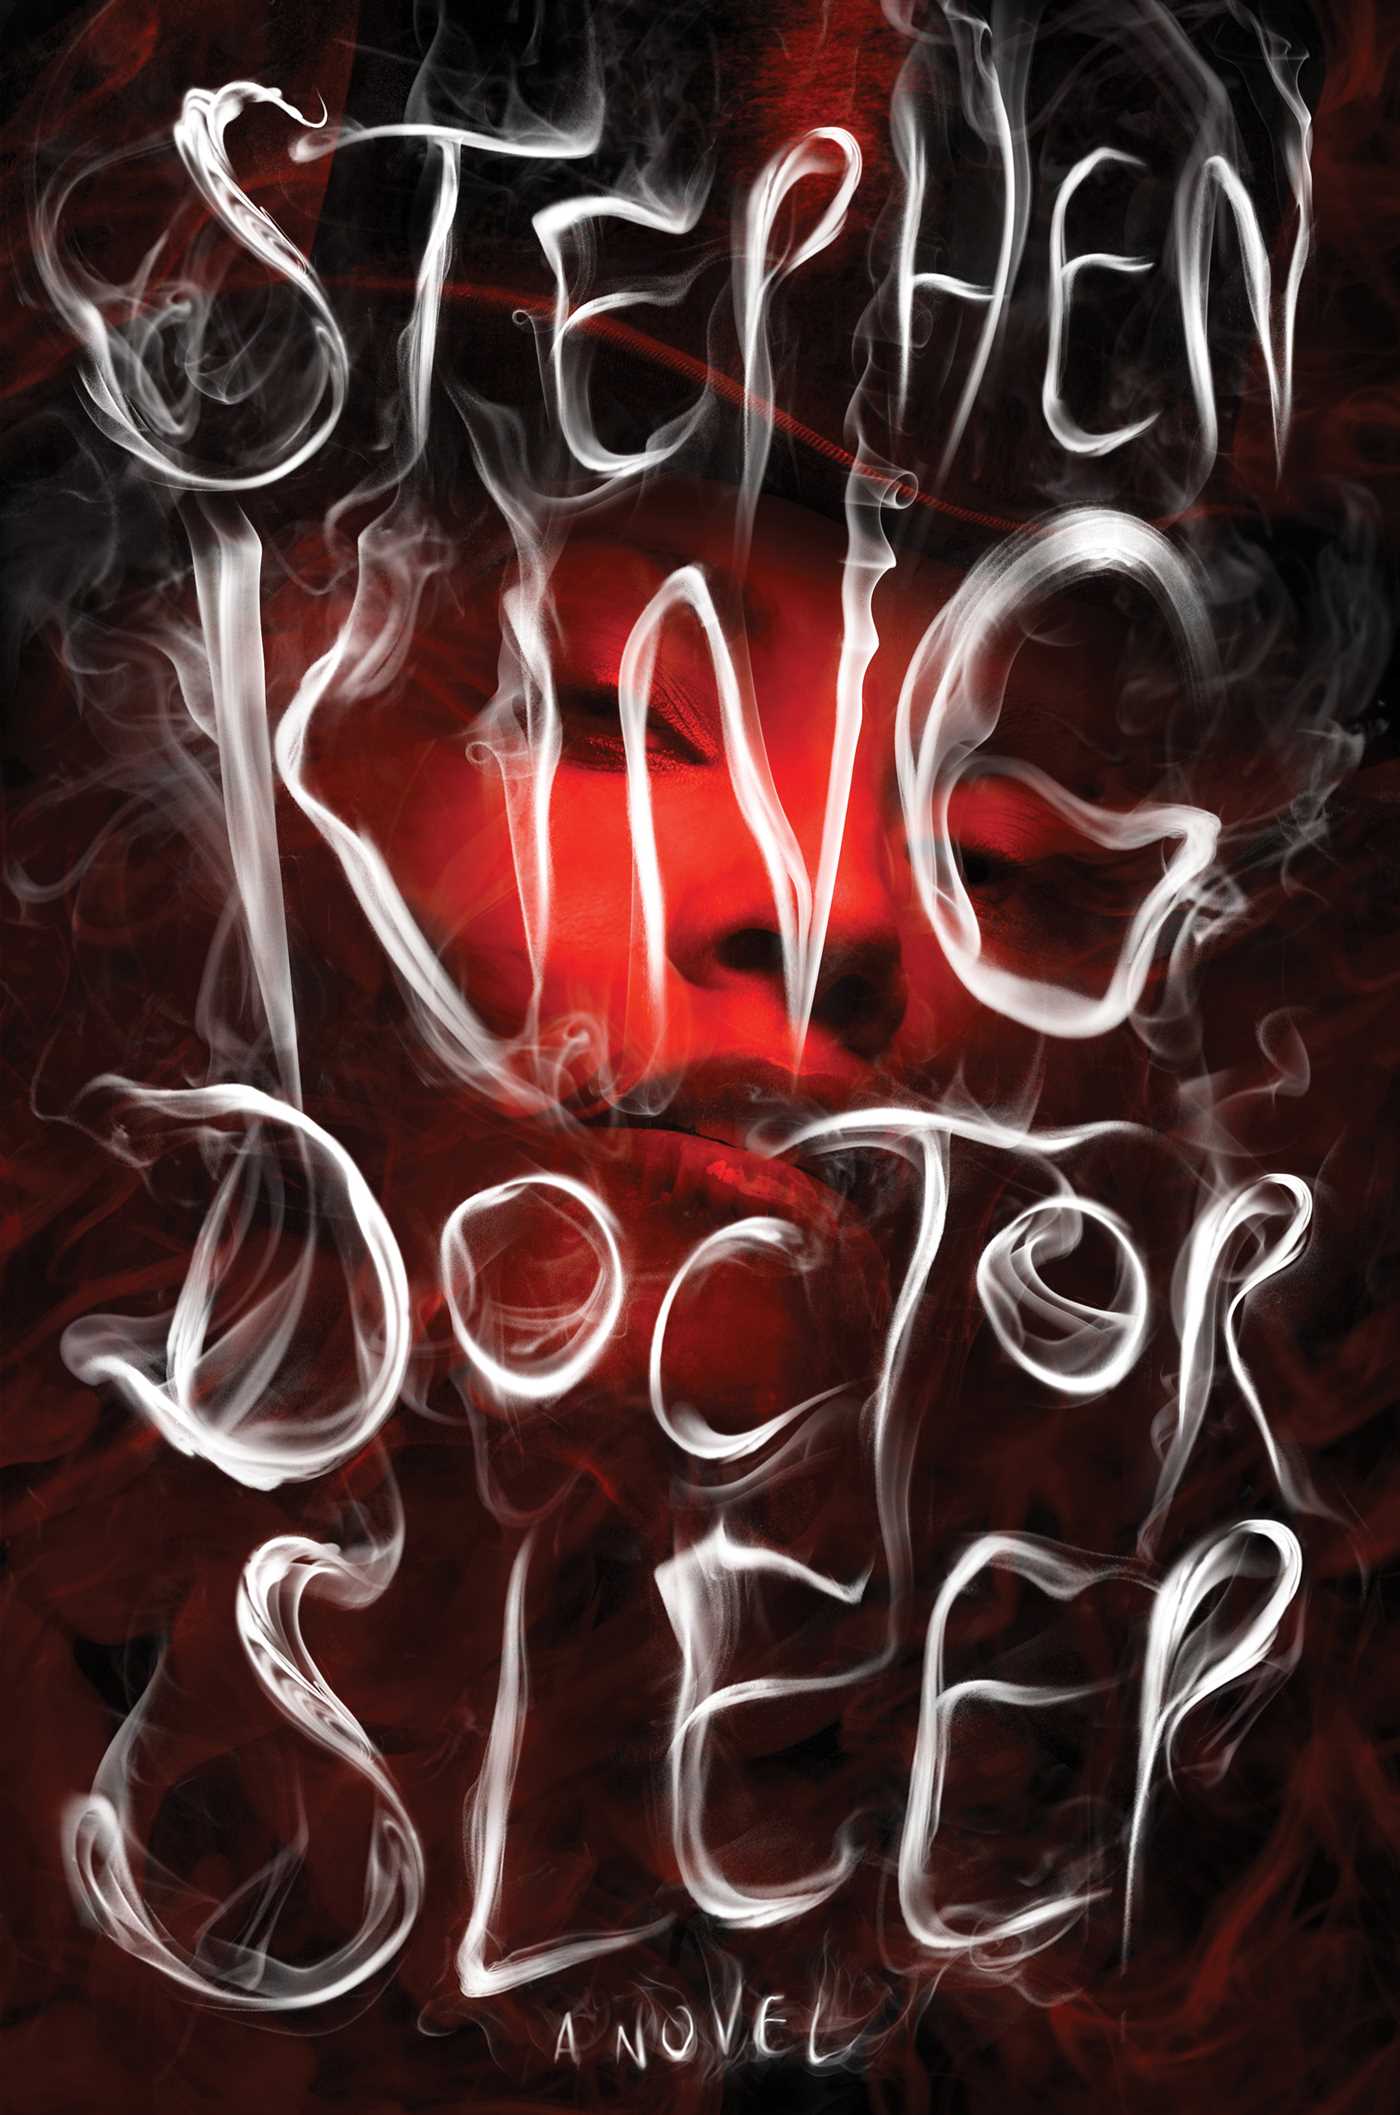 Doctor Sleep : A Novel (Hardcover) - image 1 of 1